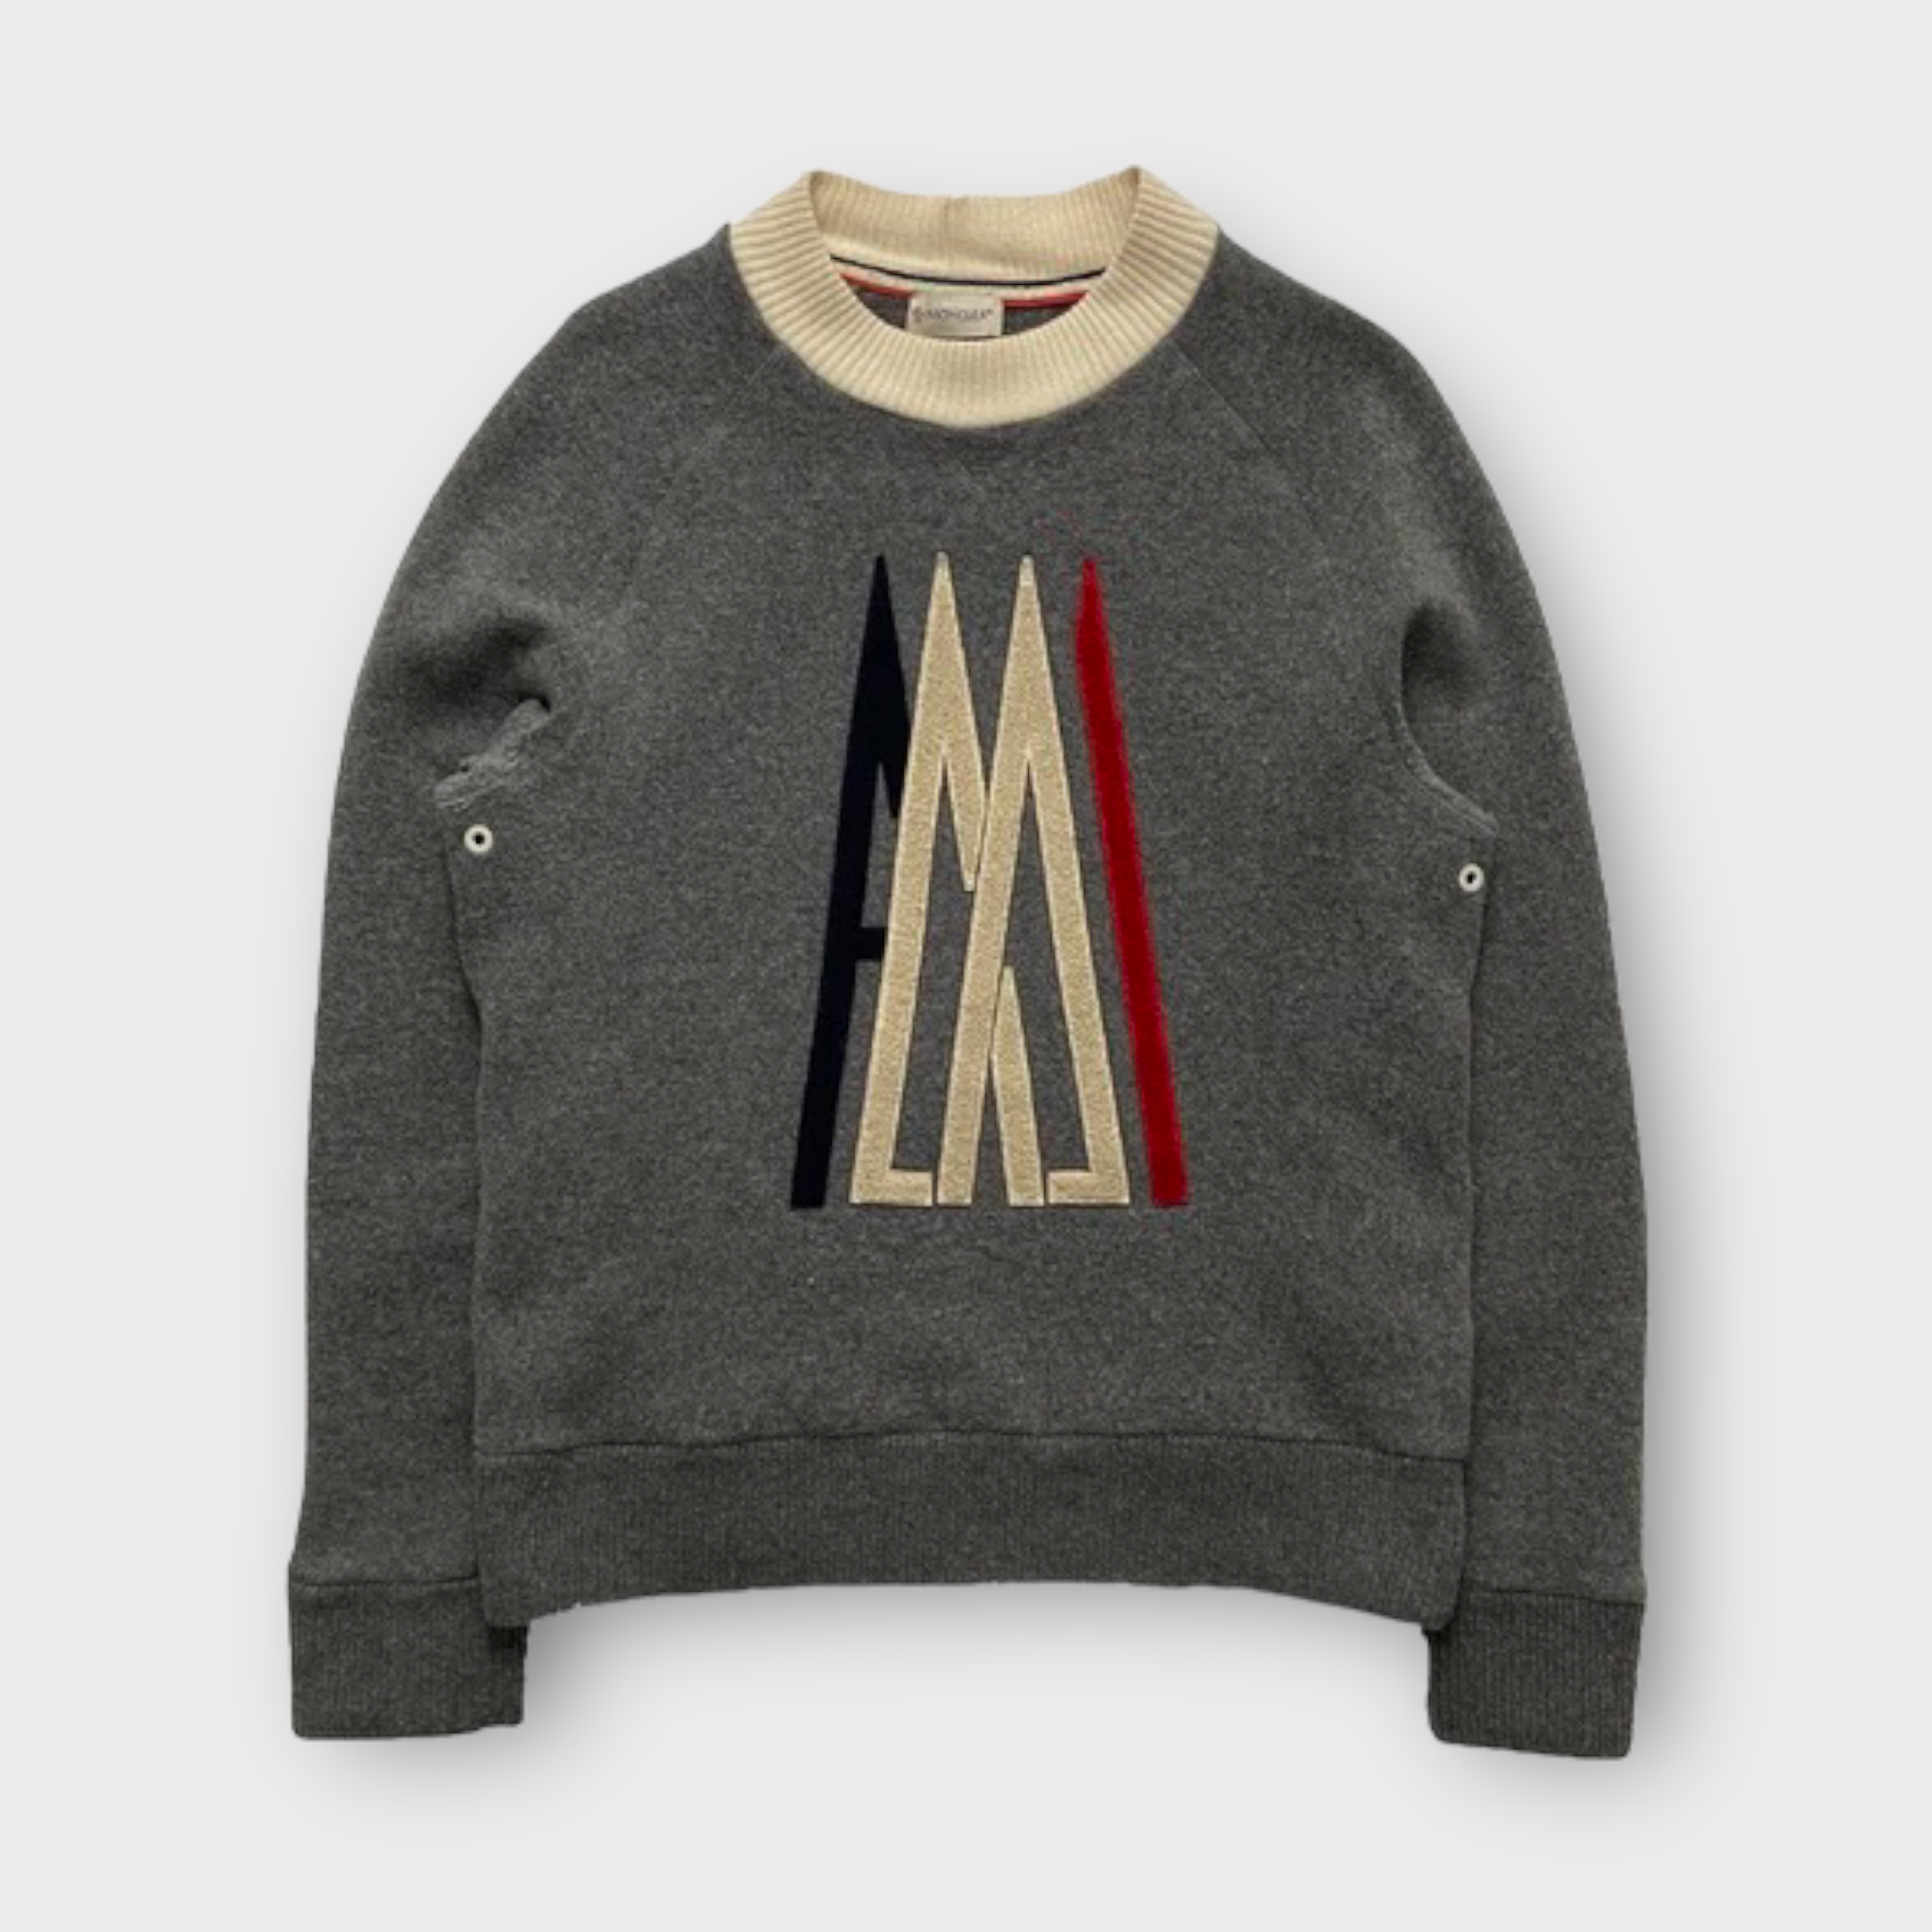 Moncler x AMI sweatshirt - HighEndMarkets - Designer Menswear